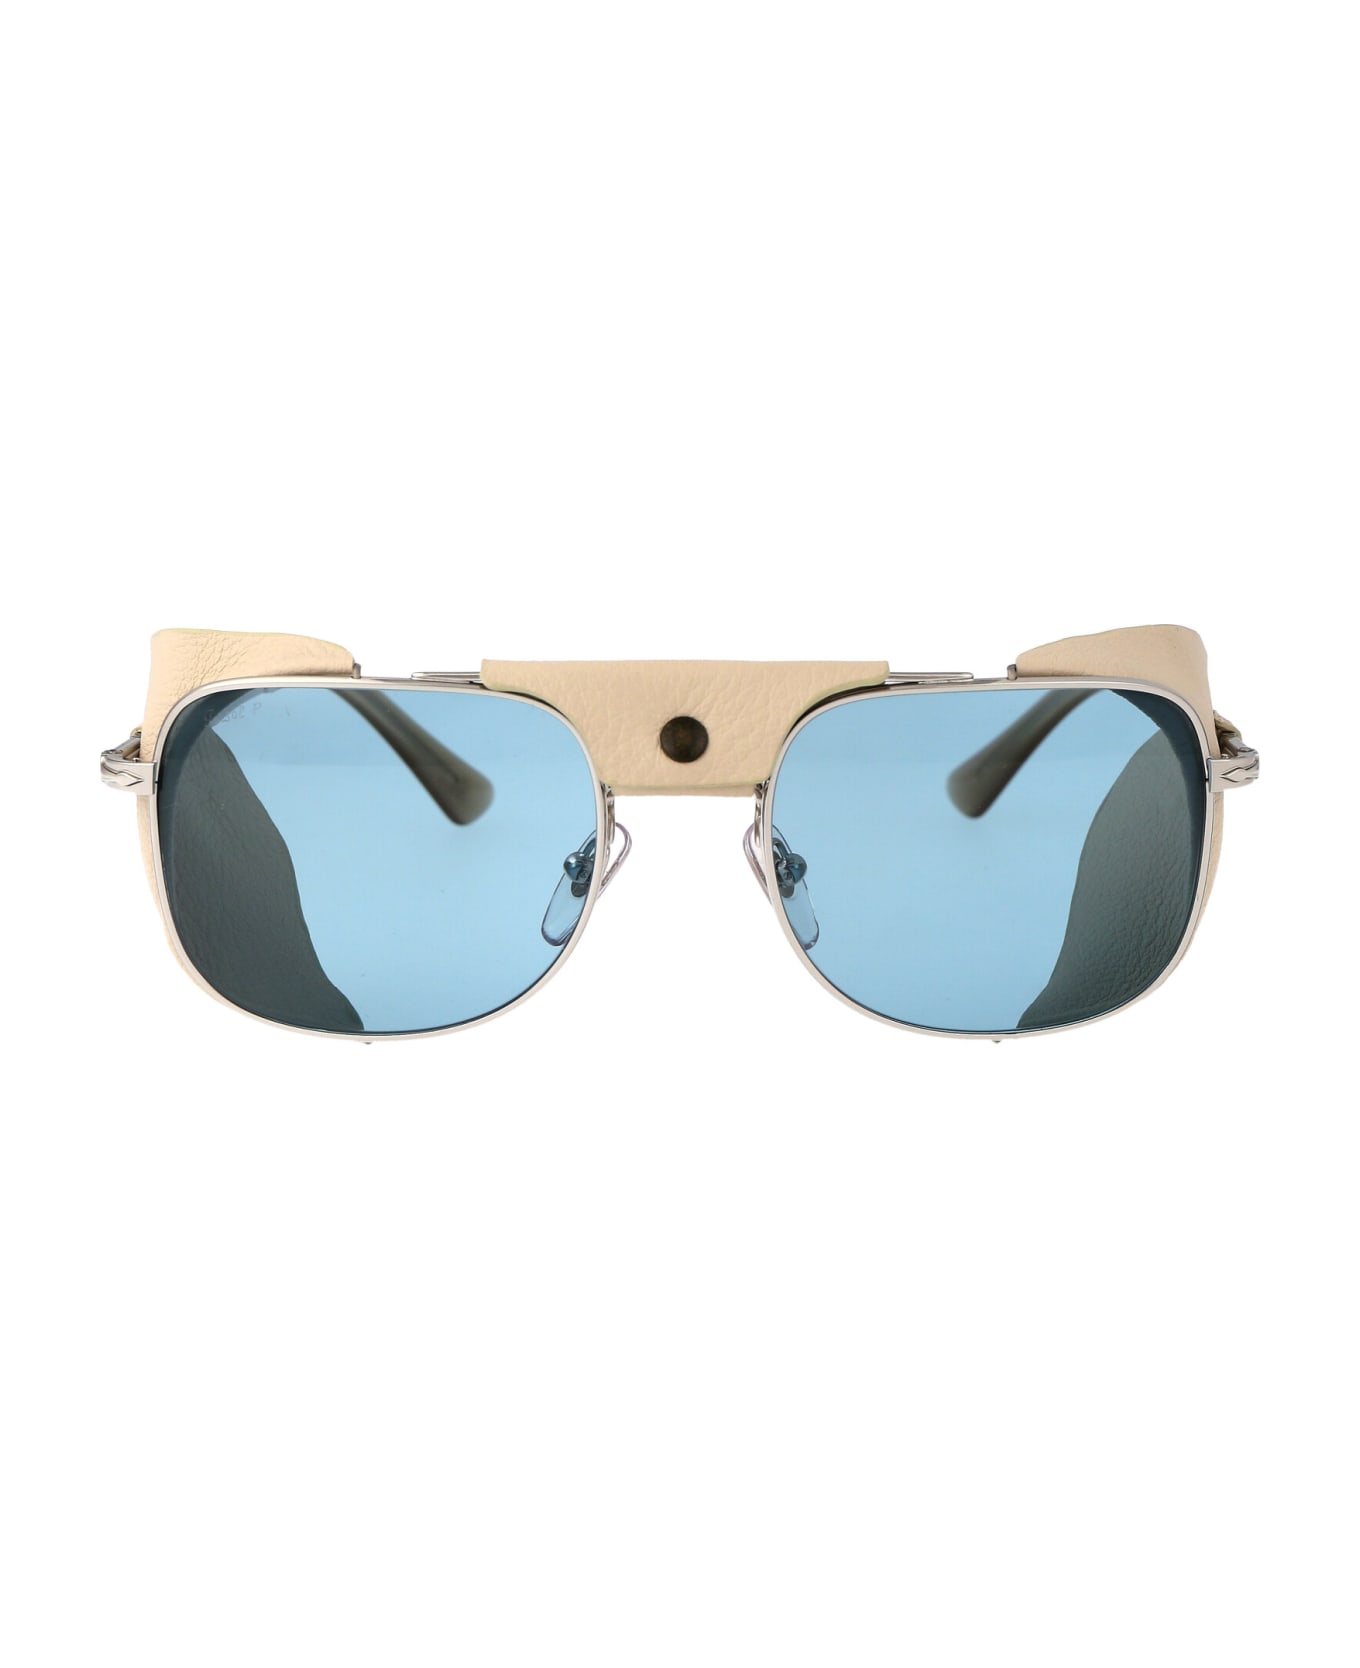 Persol 0po1013sz Sunglasses - 1155P1 Silver